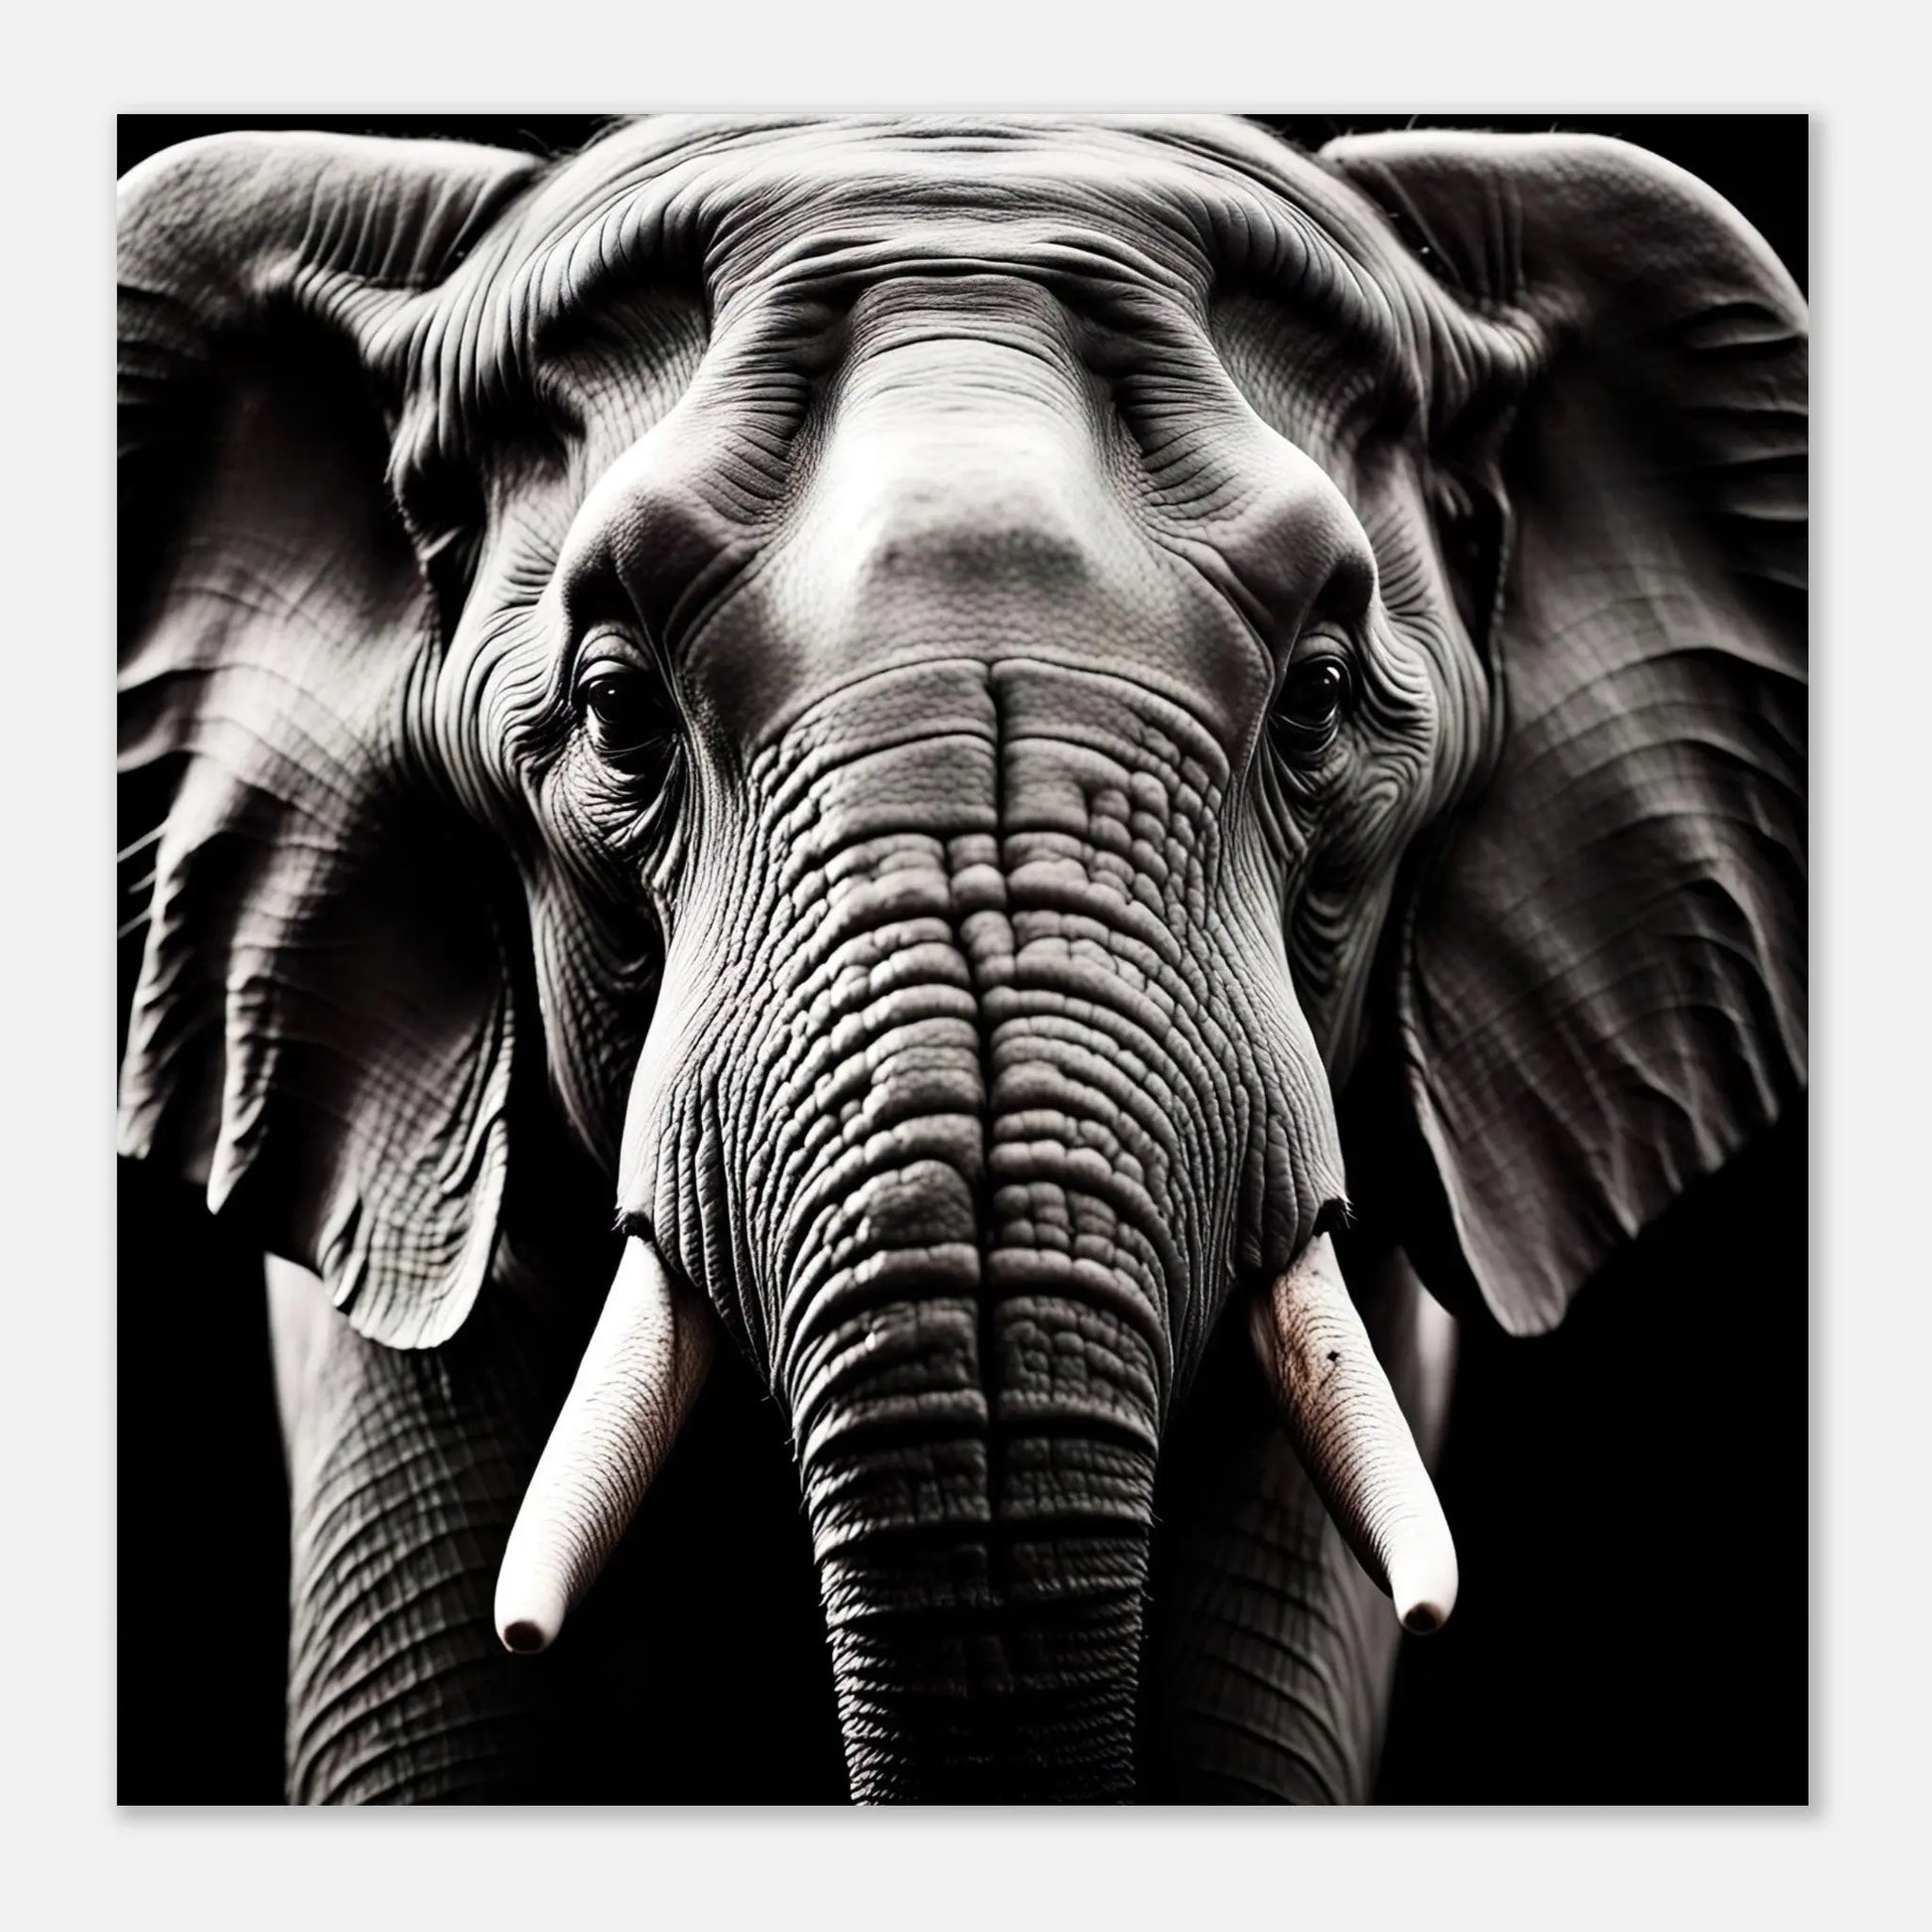 Moderner Forex-Druck - Elefant - Foto Stil, KI-Kunst RolConArt